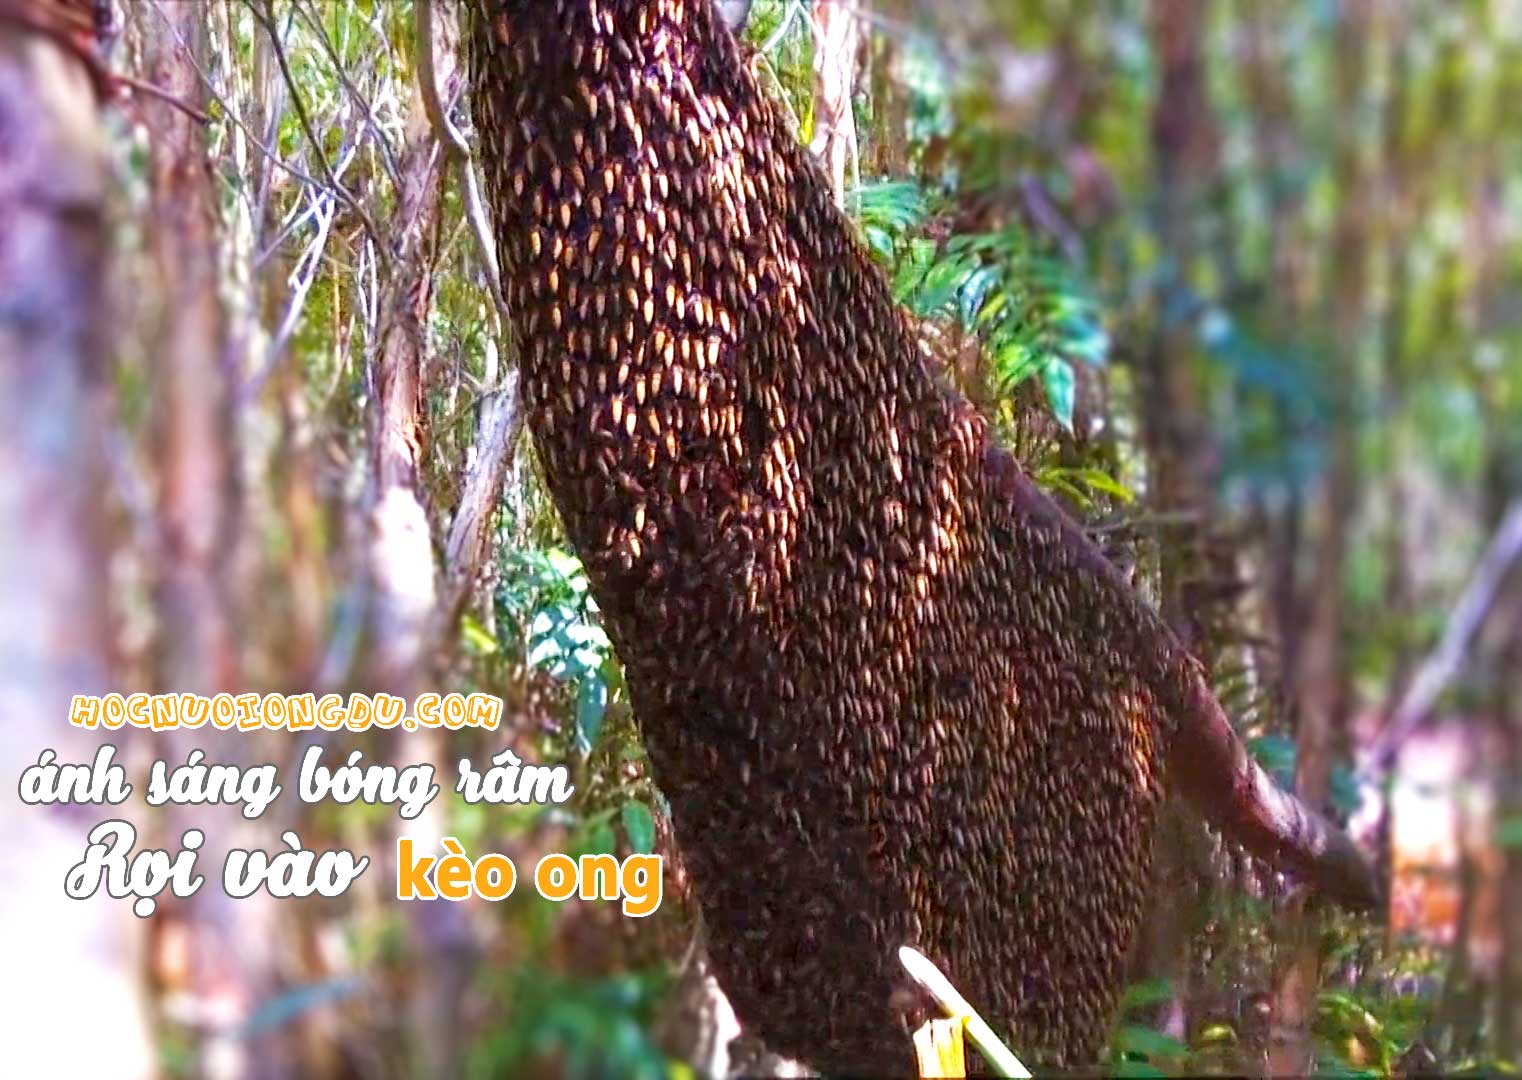 kỹ thuật gác kèo ong phải có ánh sáng rọi vào thân kèo